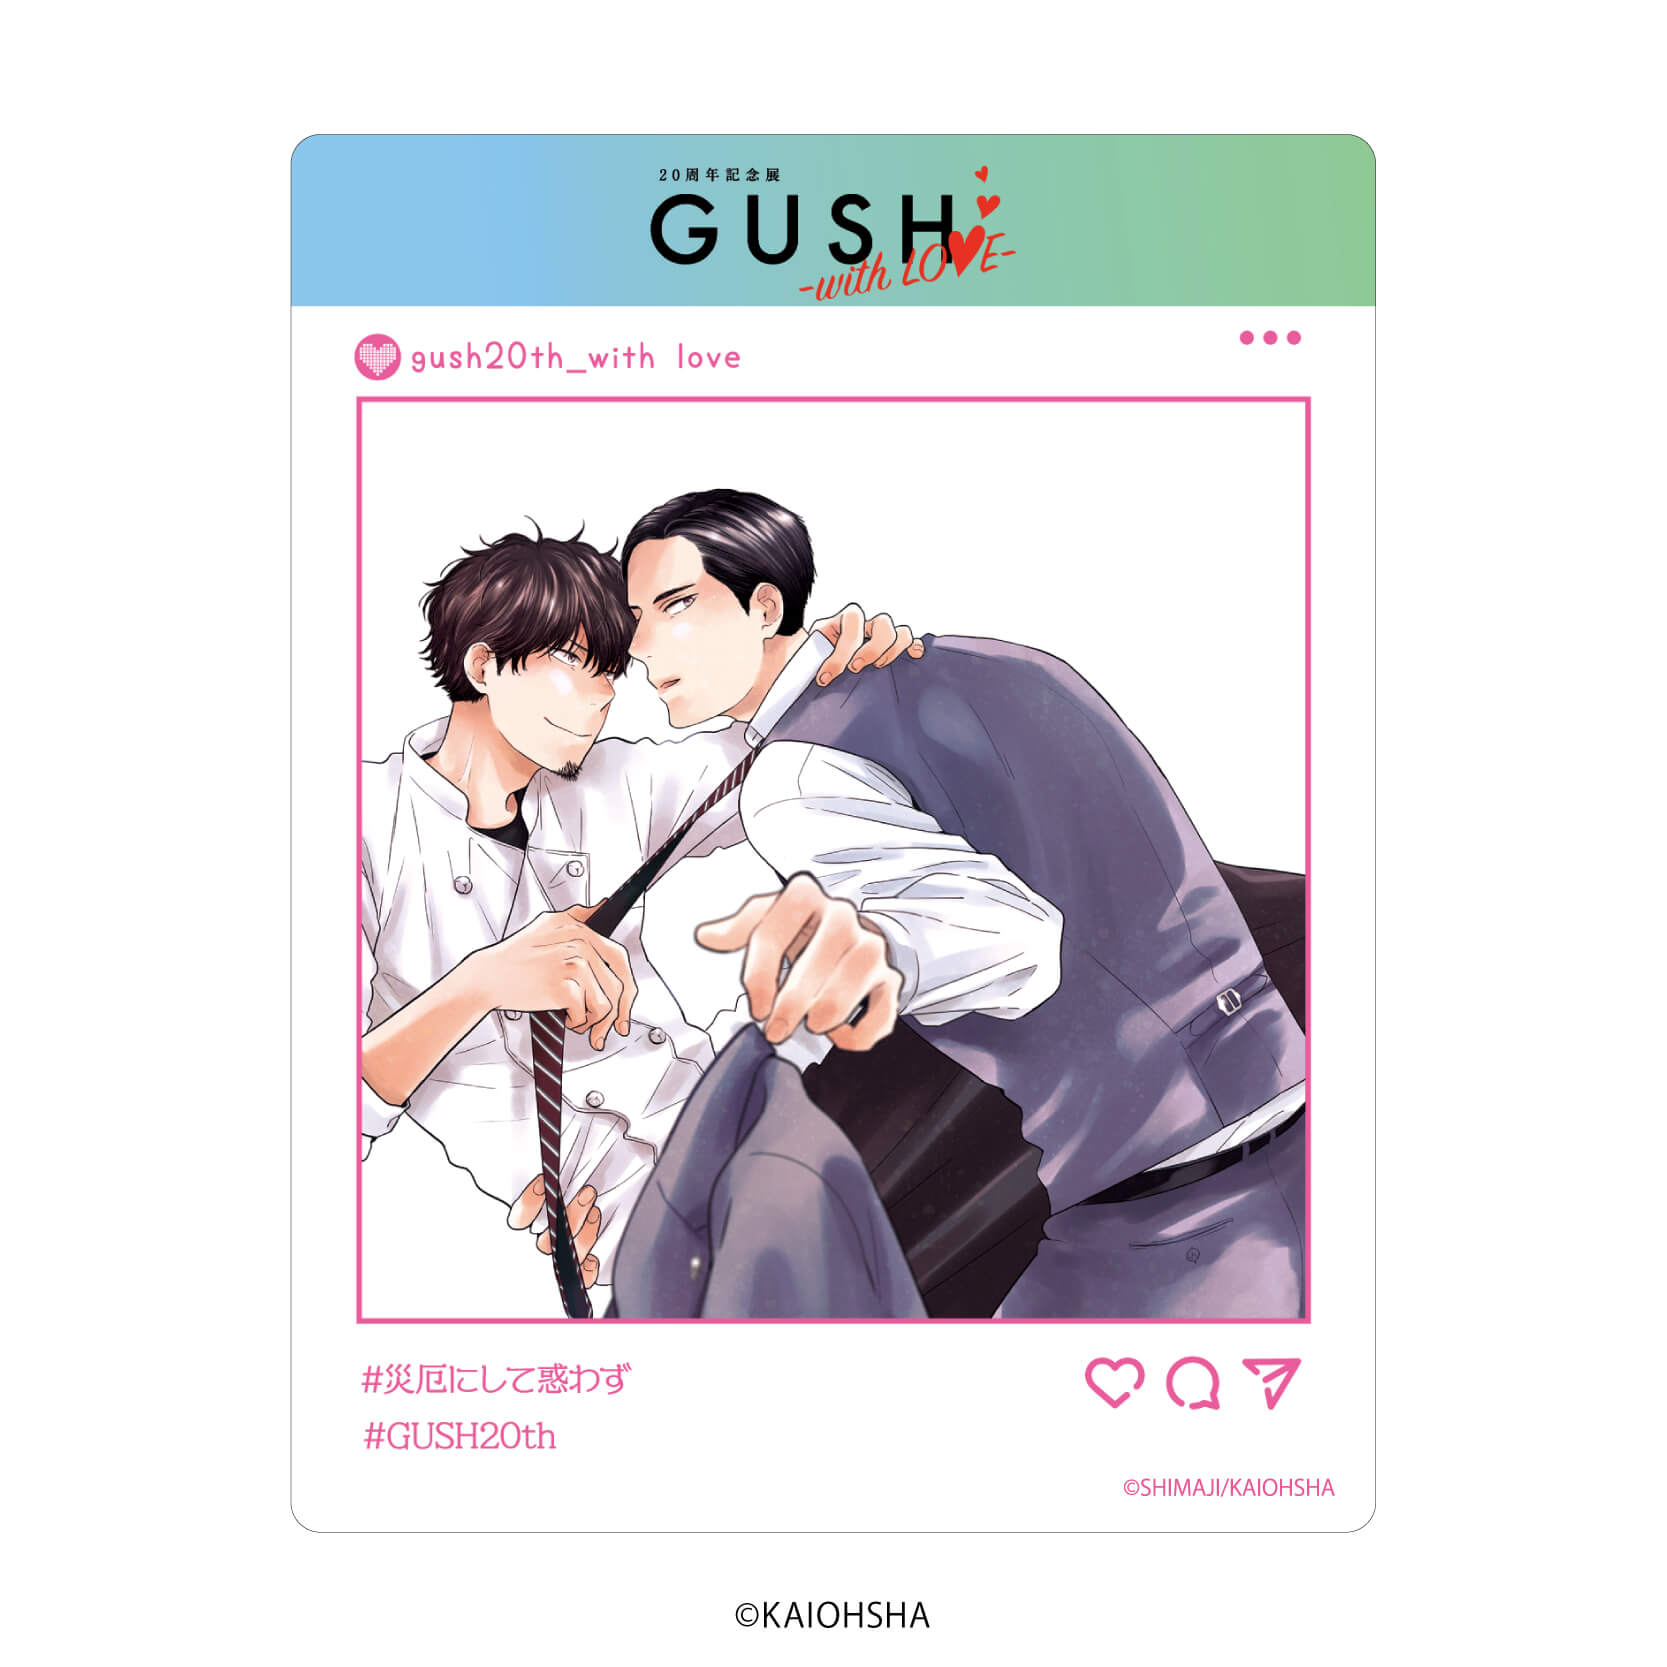 アクリルカード「GUSH20周年記念展-with LOVE-」03/ブラインド(8種)(公式&描き下ろしイラスト)